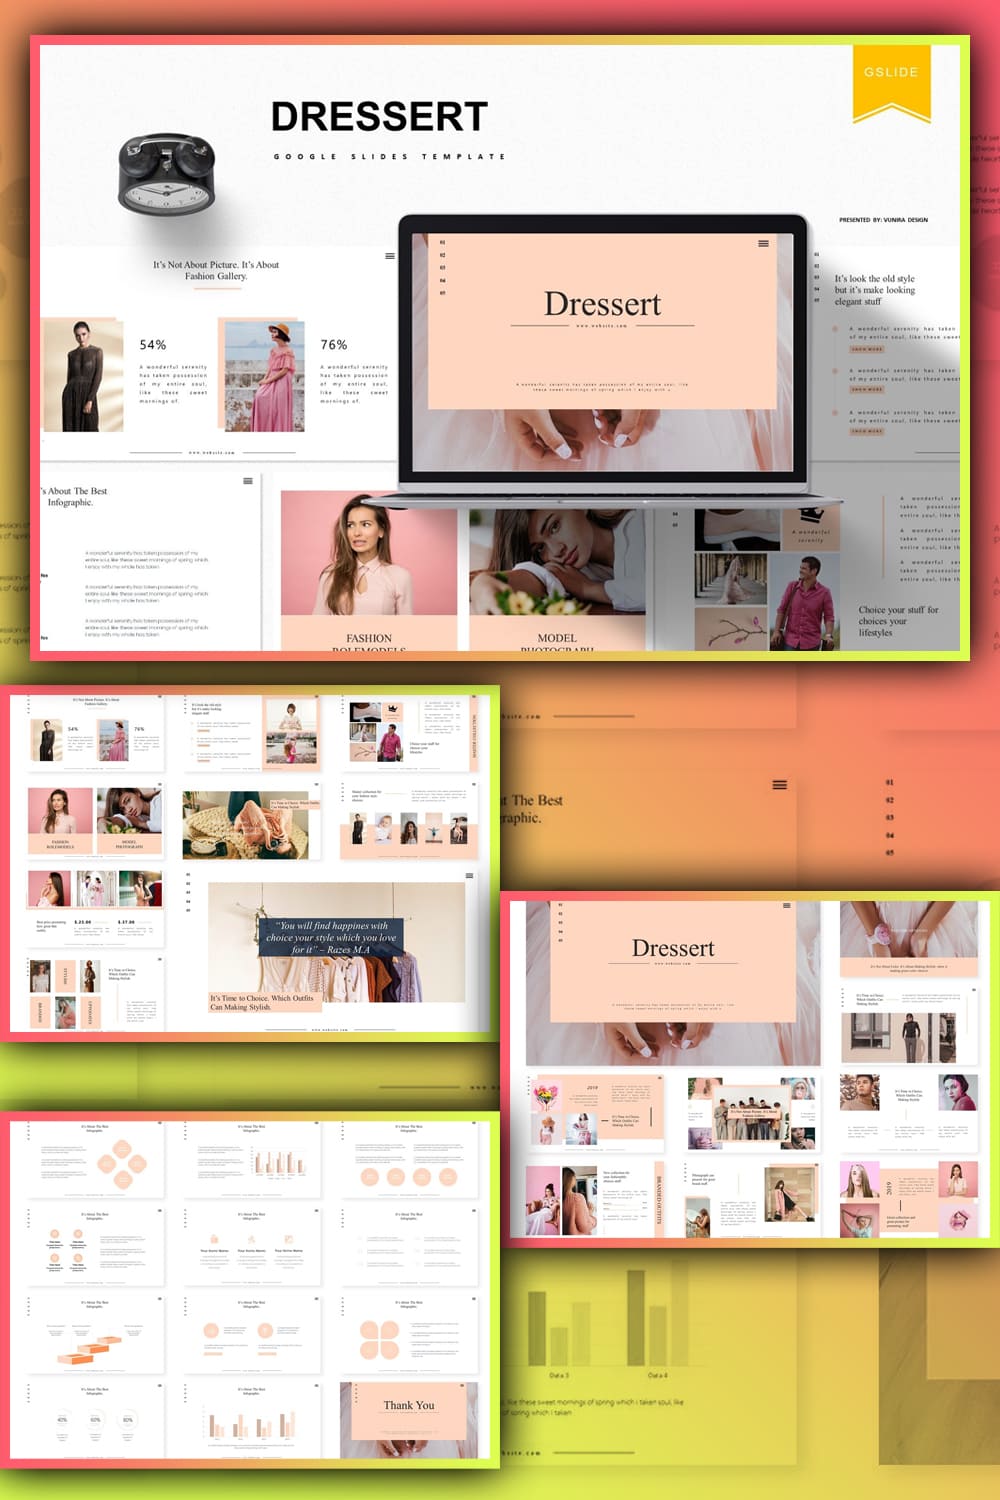 Images of fashion model of Dressert Google Slides Template.